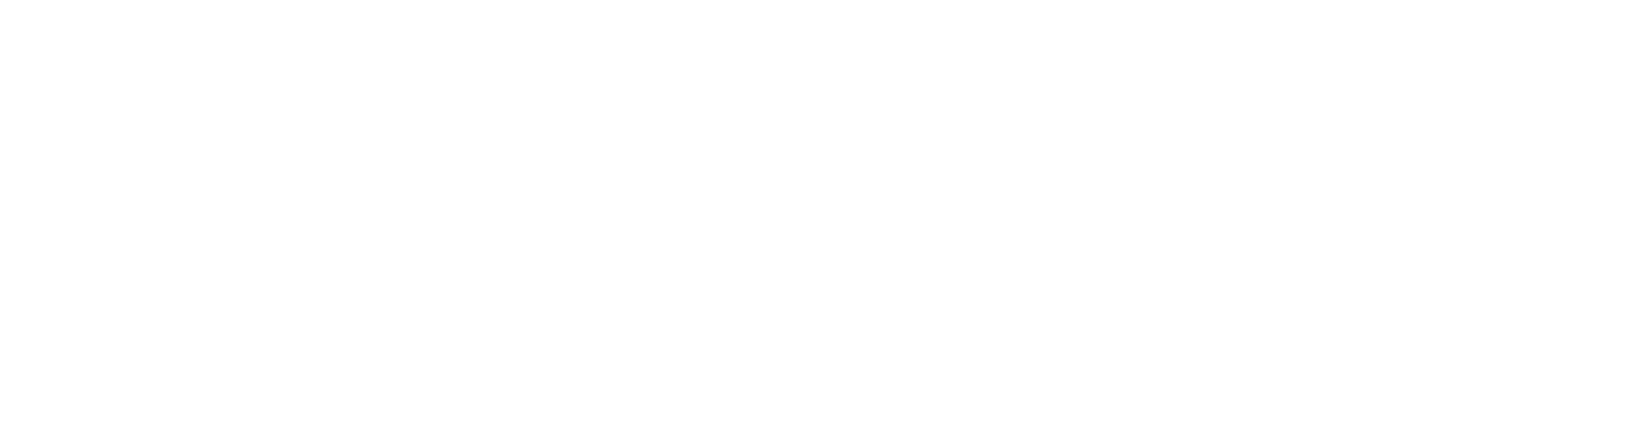 Bloober Team logo large for dark backgrounds (transparent PNG)